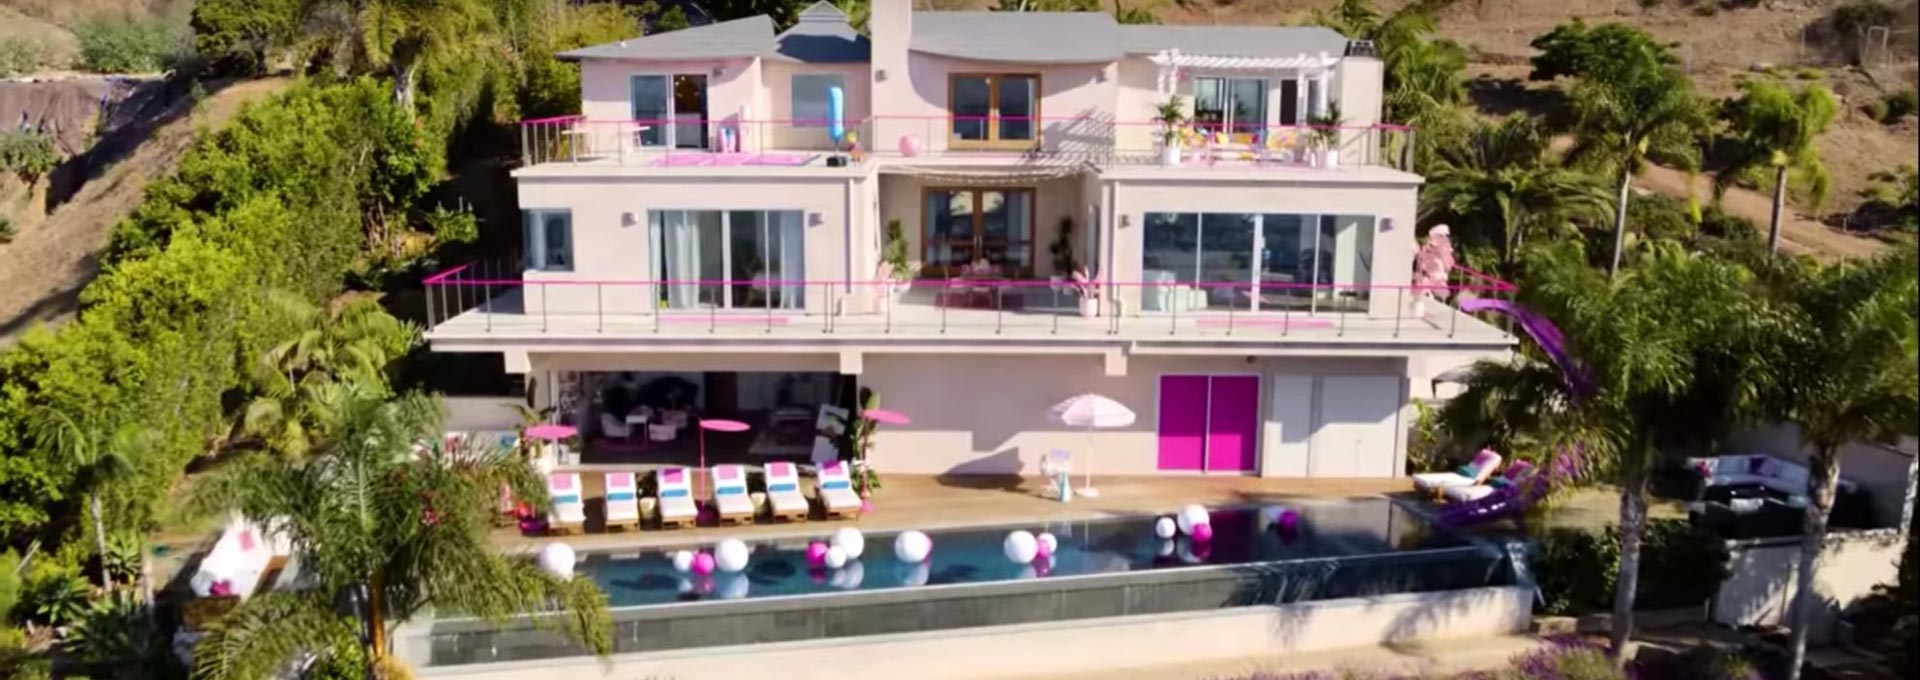 Esta es la casa de Barbie (y está disponible en Airbnb)